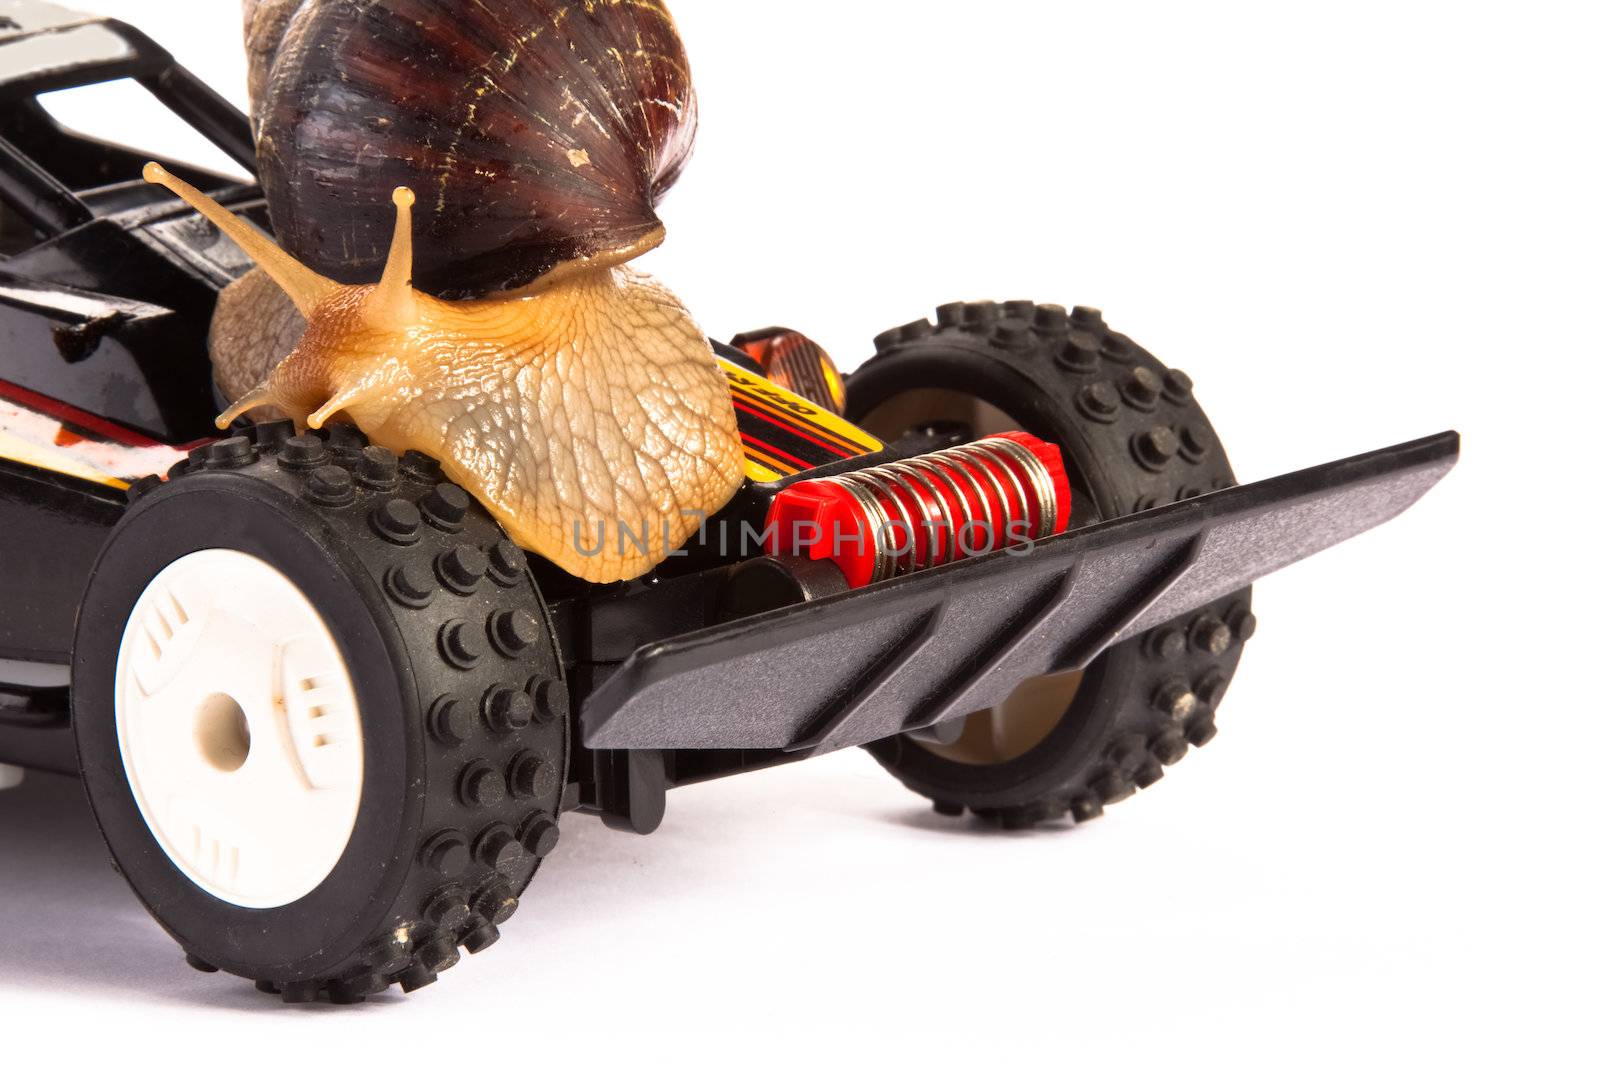 Snail on an RC Toy Race Car